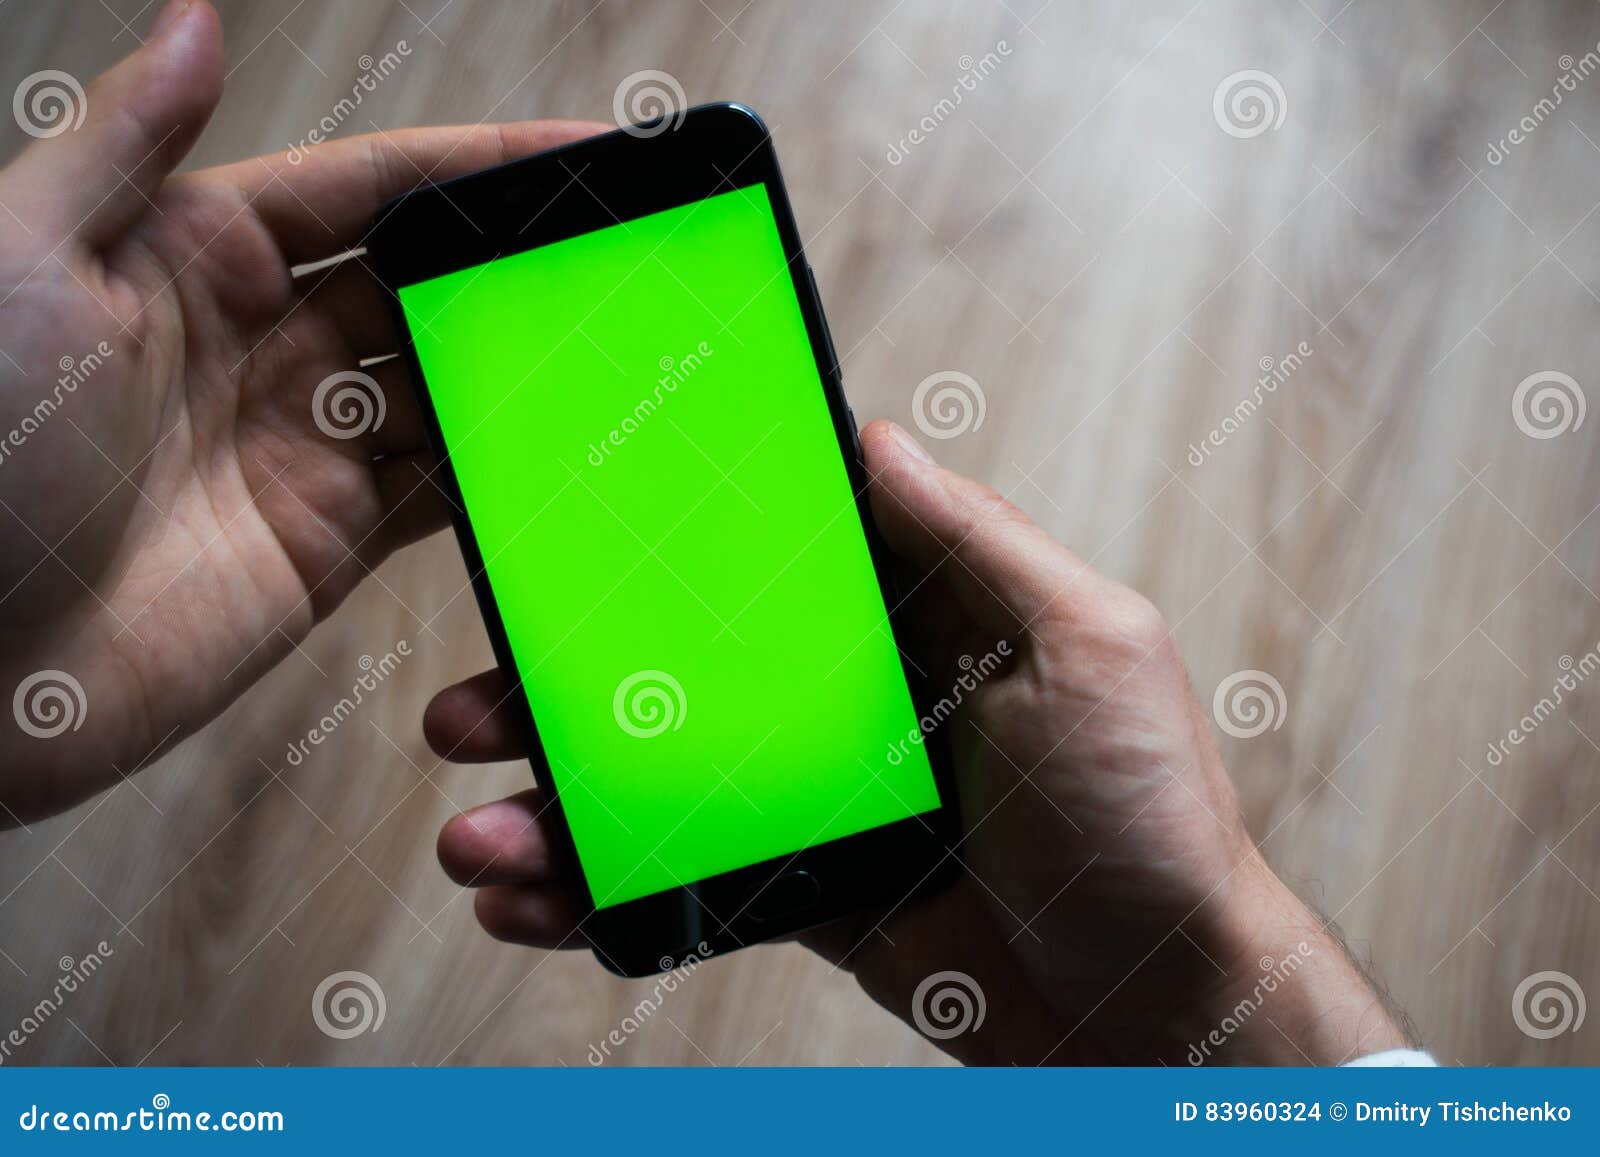 На телефоне зеленый экран что делать. Зеленый смартфон. Смартфон Green Screen. Фото телефона с зеленым экраном. Телефон с зеленым экраном хромакей.